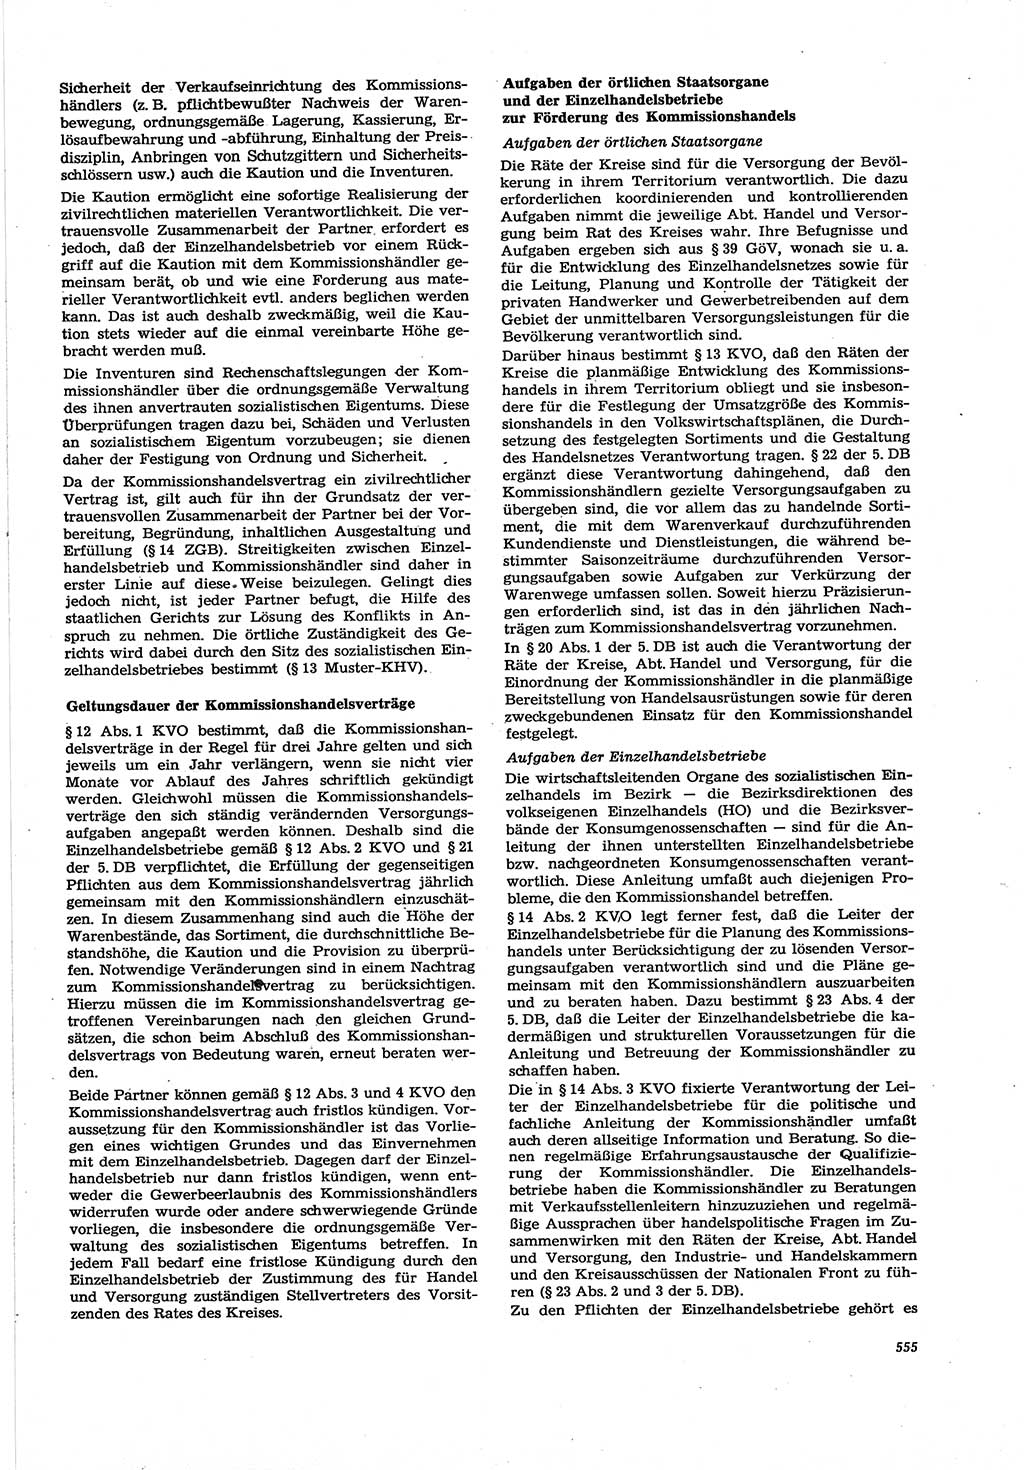 Neue Justiz (NJ), Zeitschrift für Recht und Rechtswissenschaft [Deutsche Demokratische Republik (DDR)], 30. Jahrgang 1976, Seite 555 (NJ DDR 1976, S. 555)